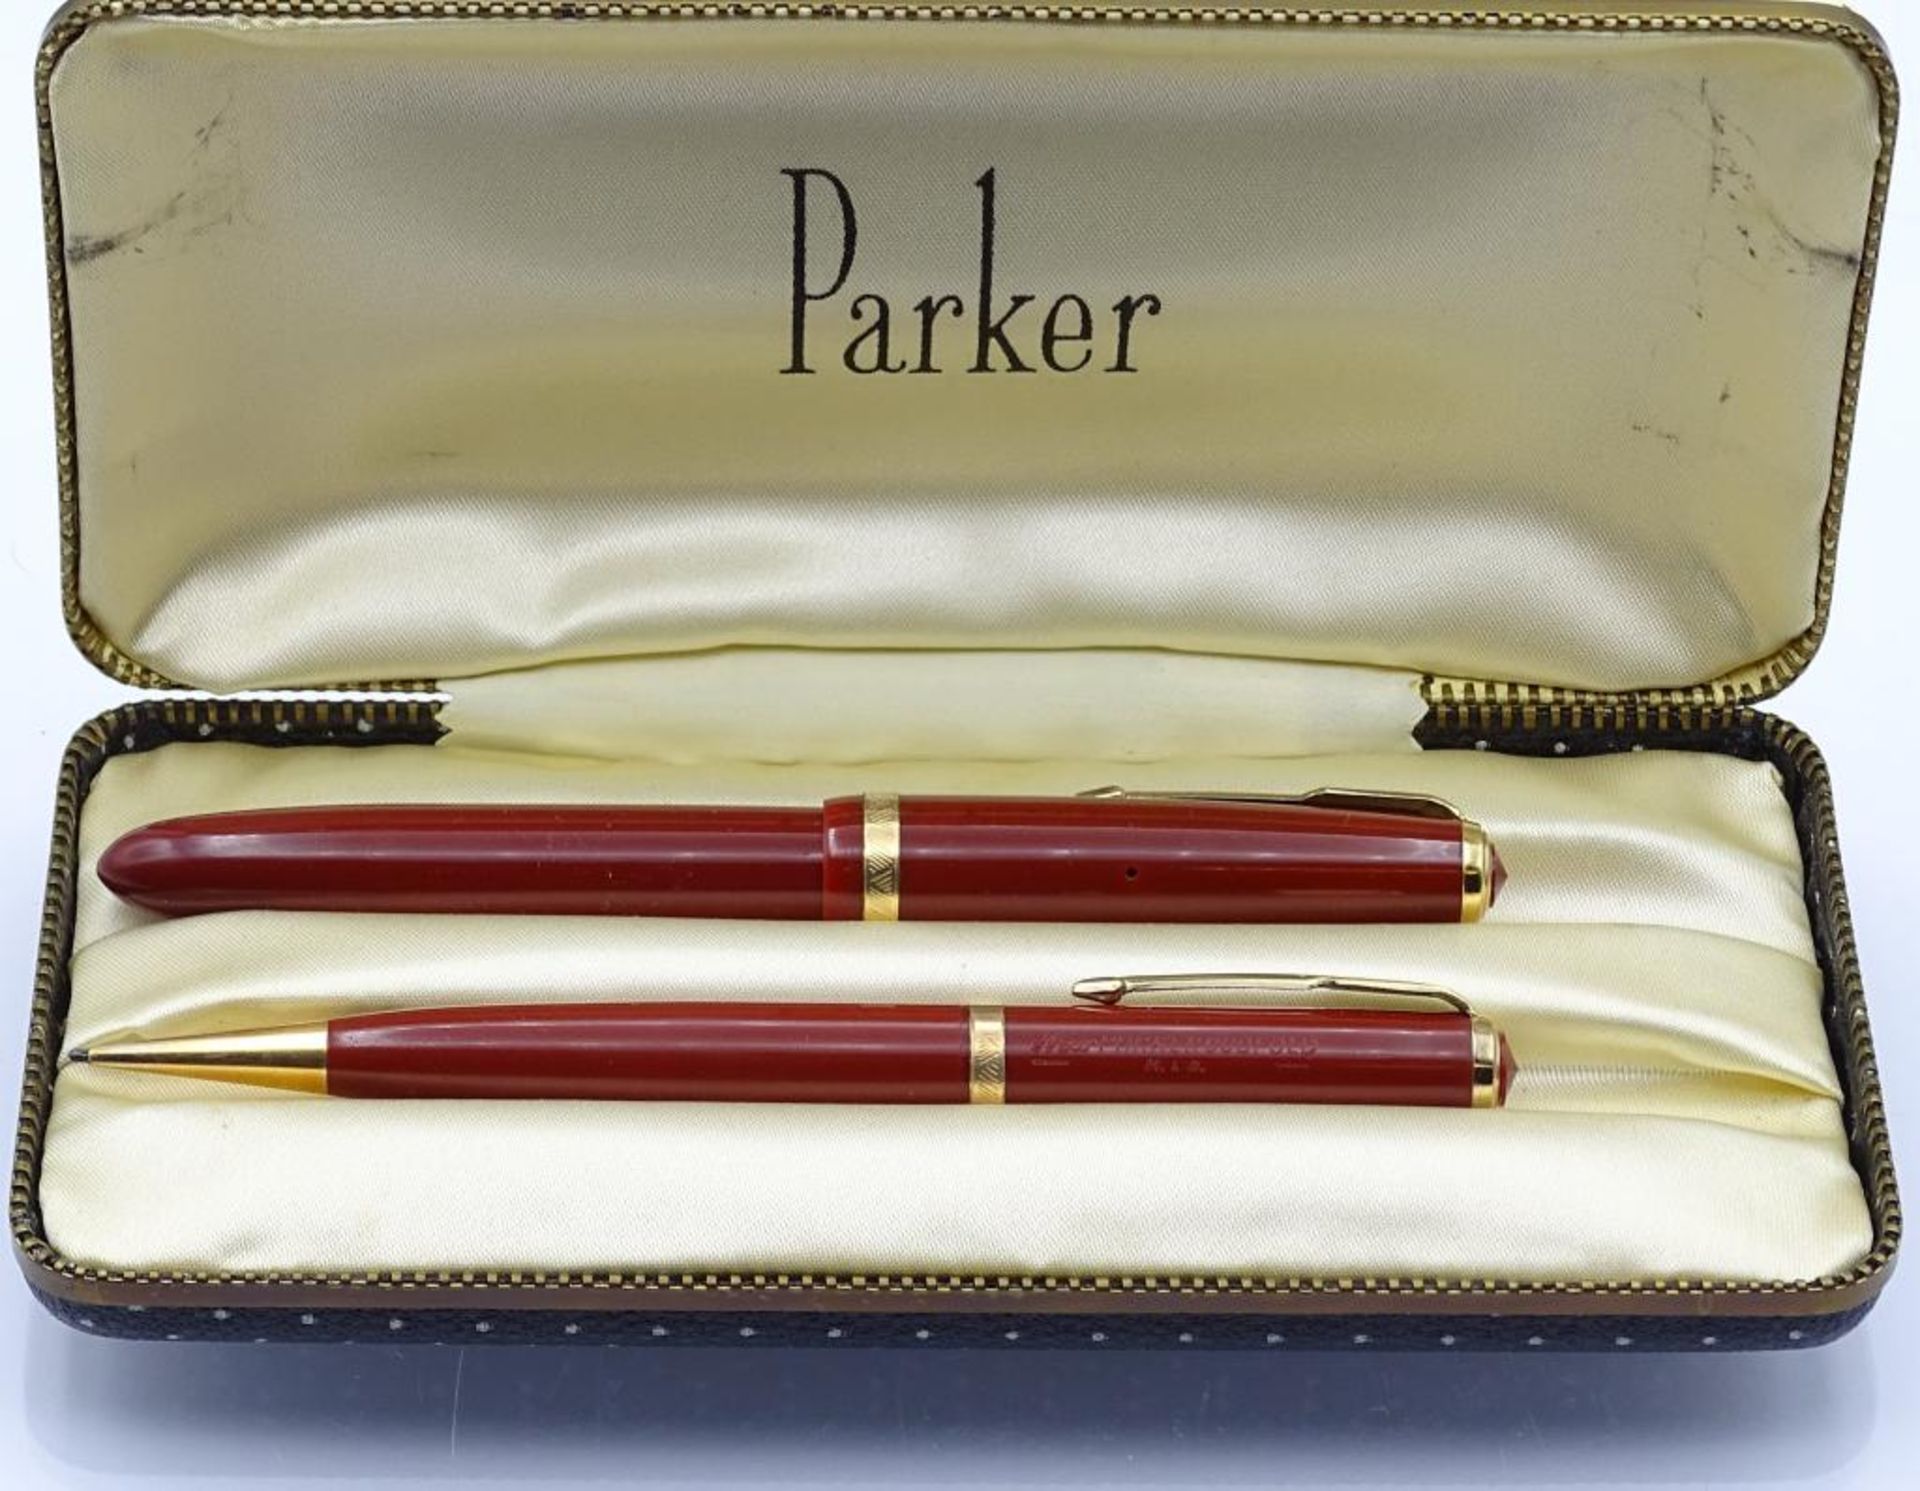 Altes Parker Duofold Schreibset "Parker",Füller und Druckbleistift,Parker-Duofold, 14K Goldfeder,